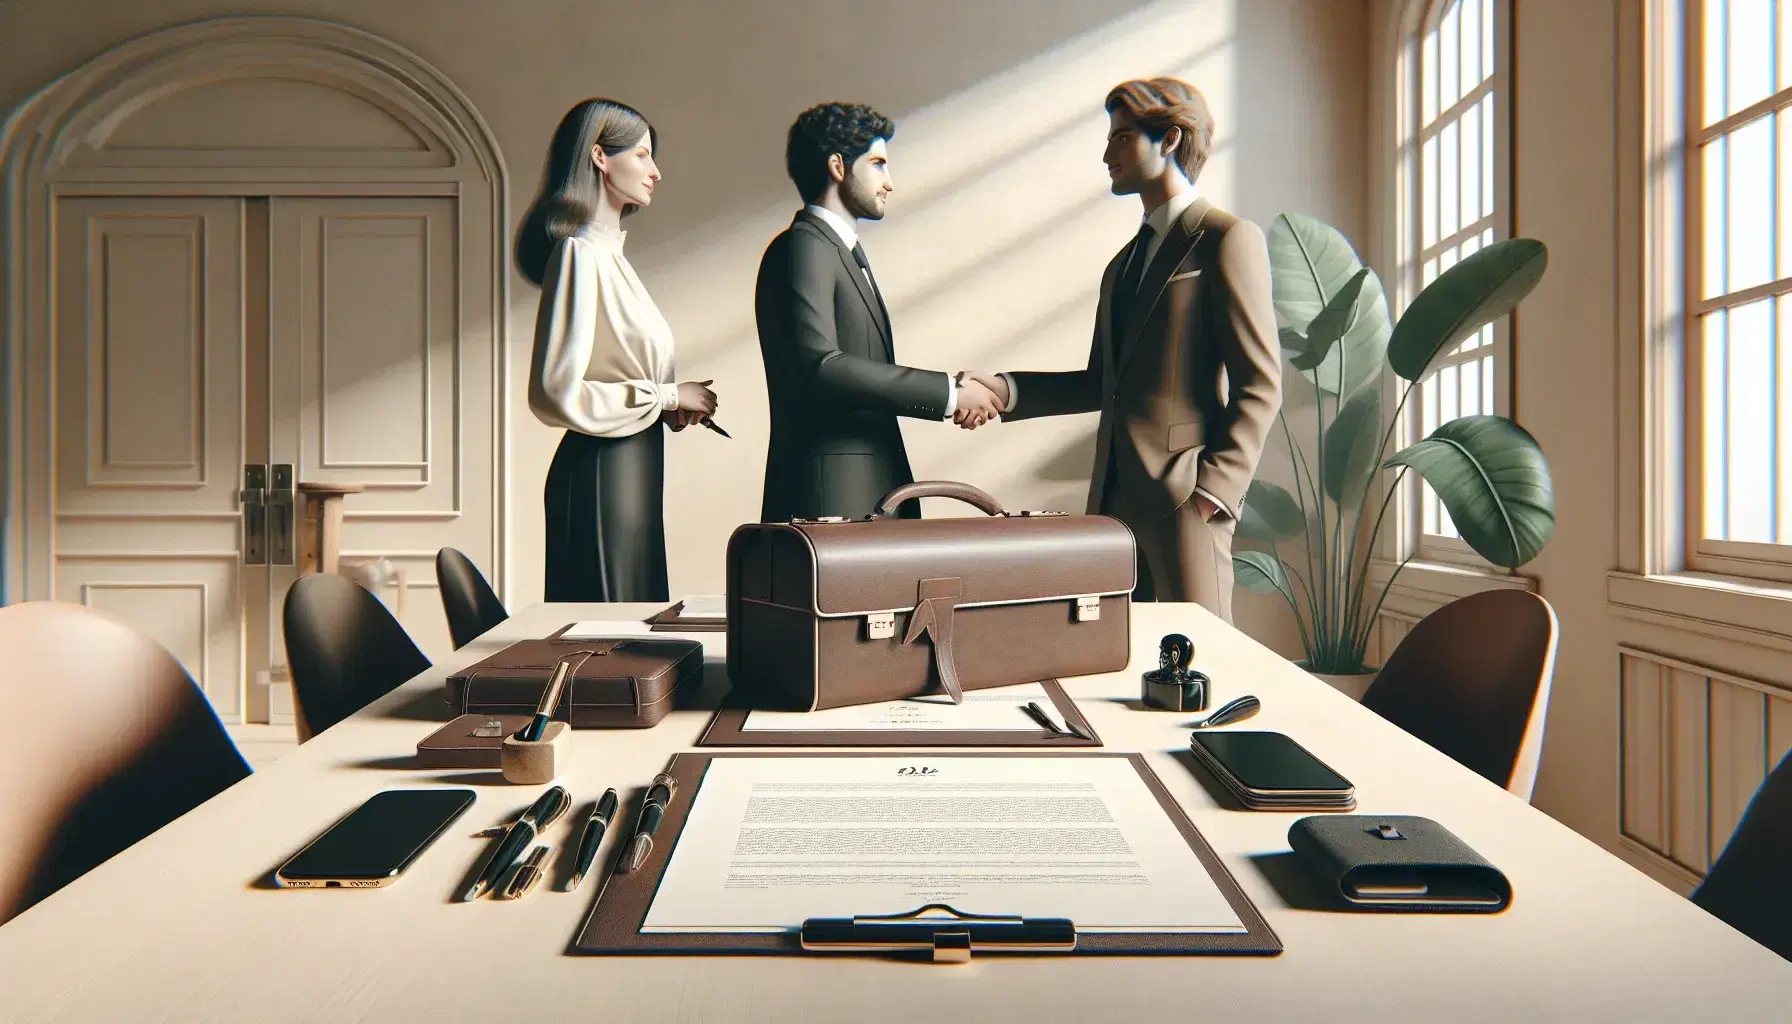 Tres profesionales en reunión de negocios, dos estrechando manos sobre mesa de madera con maletín, móviles y documentos.